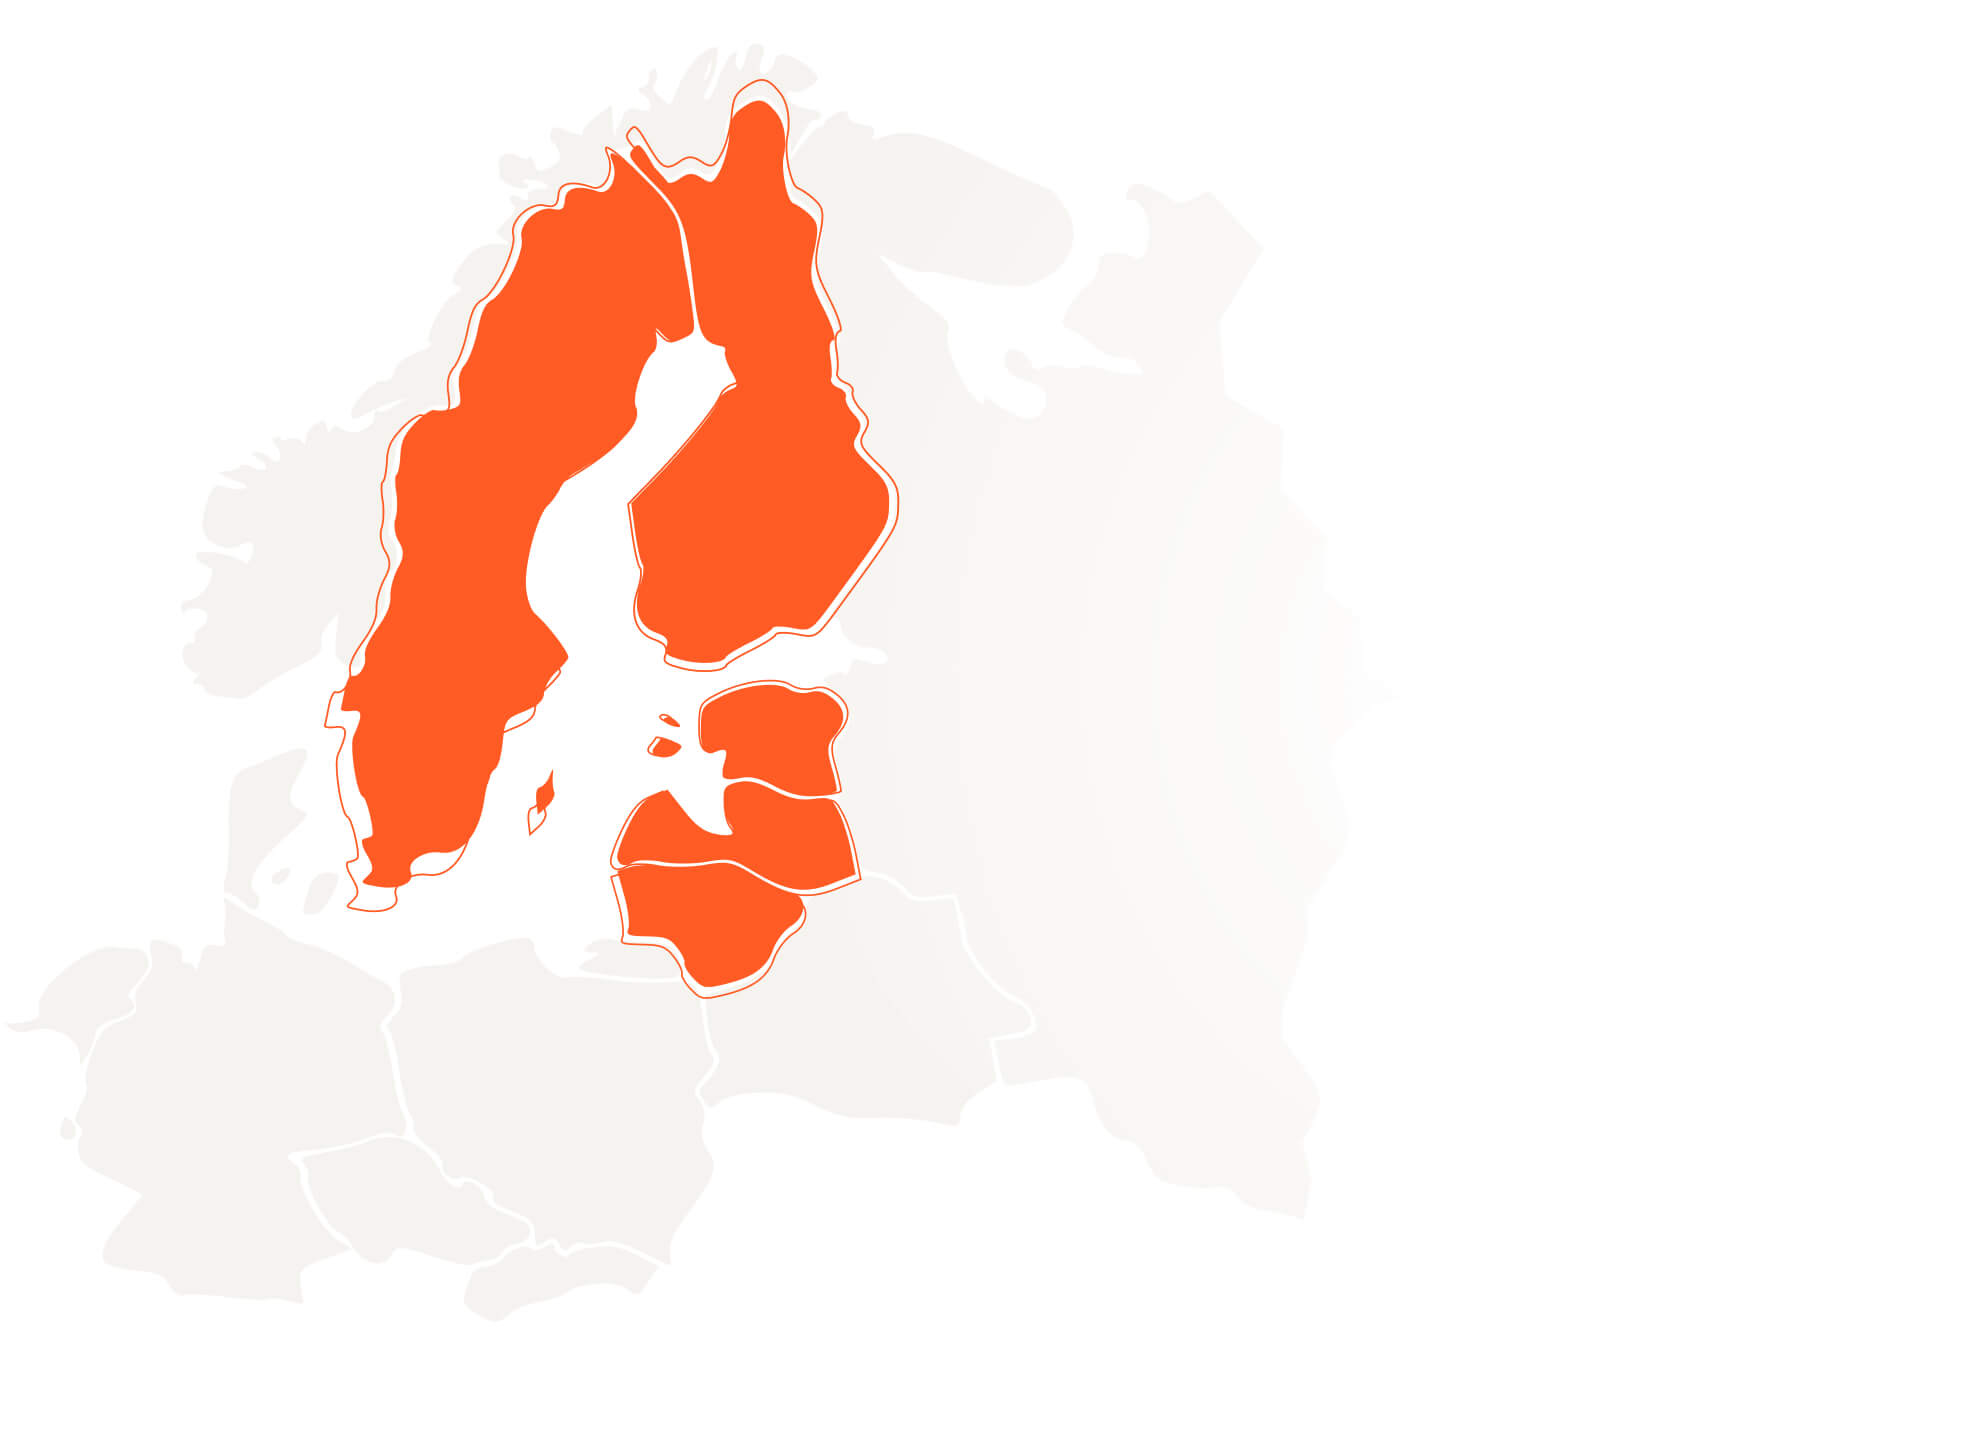 Juhi otsingud Baltikumis ja Põhjamaades